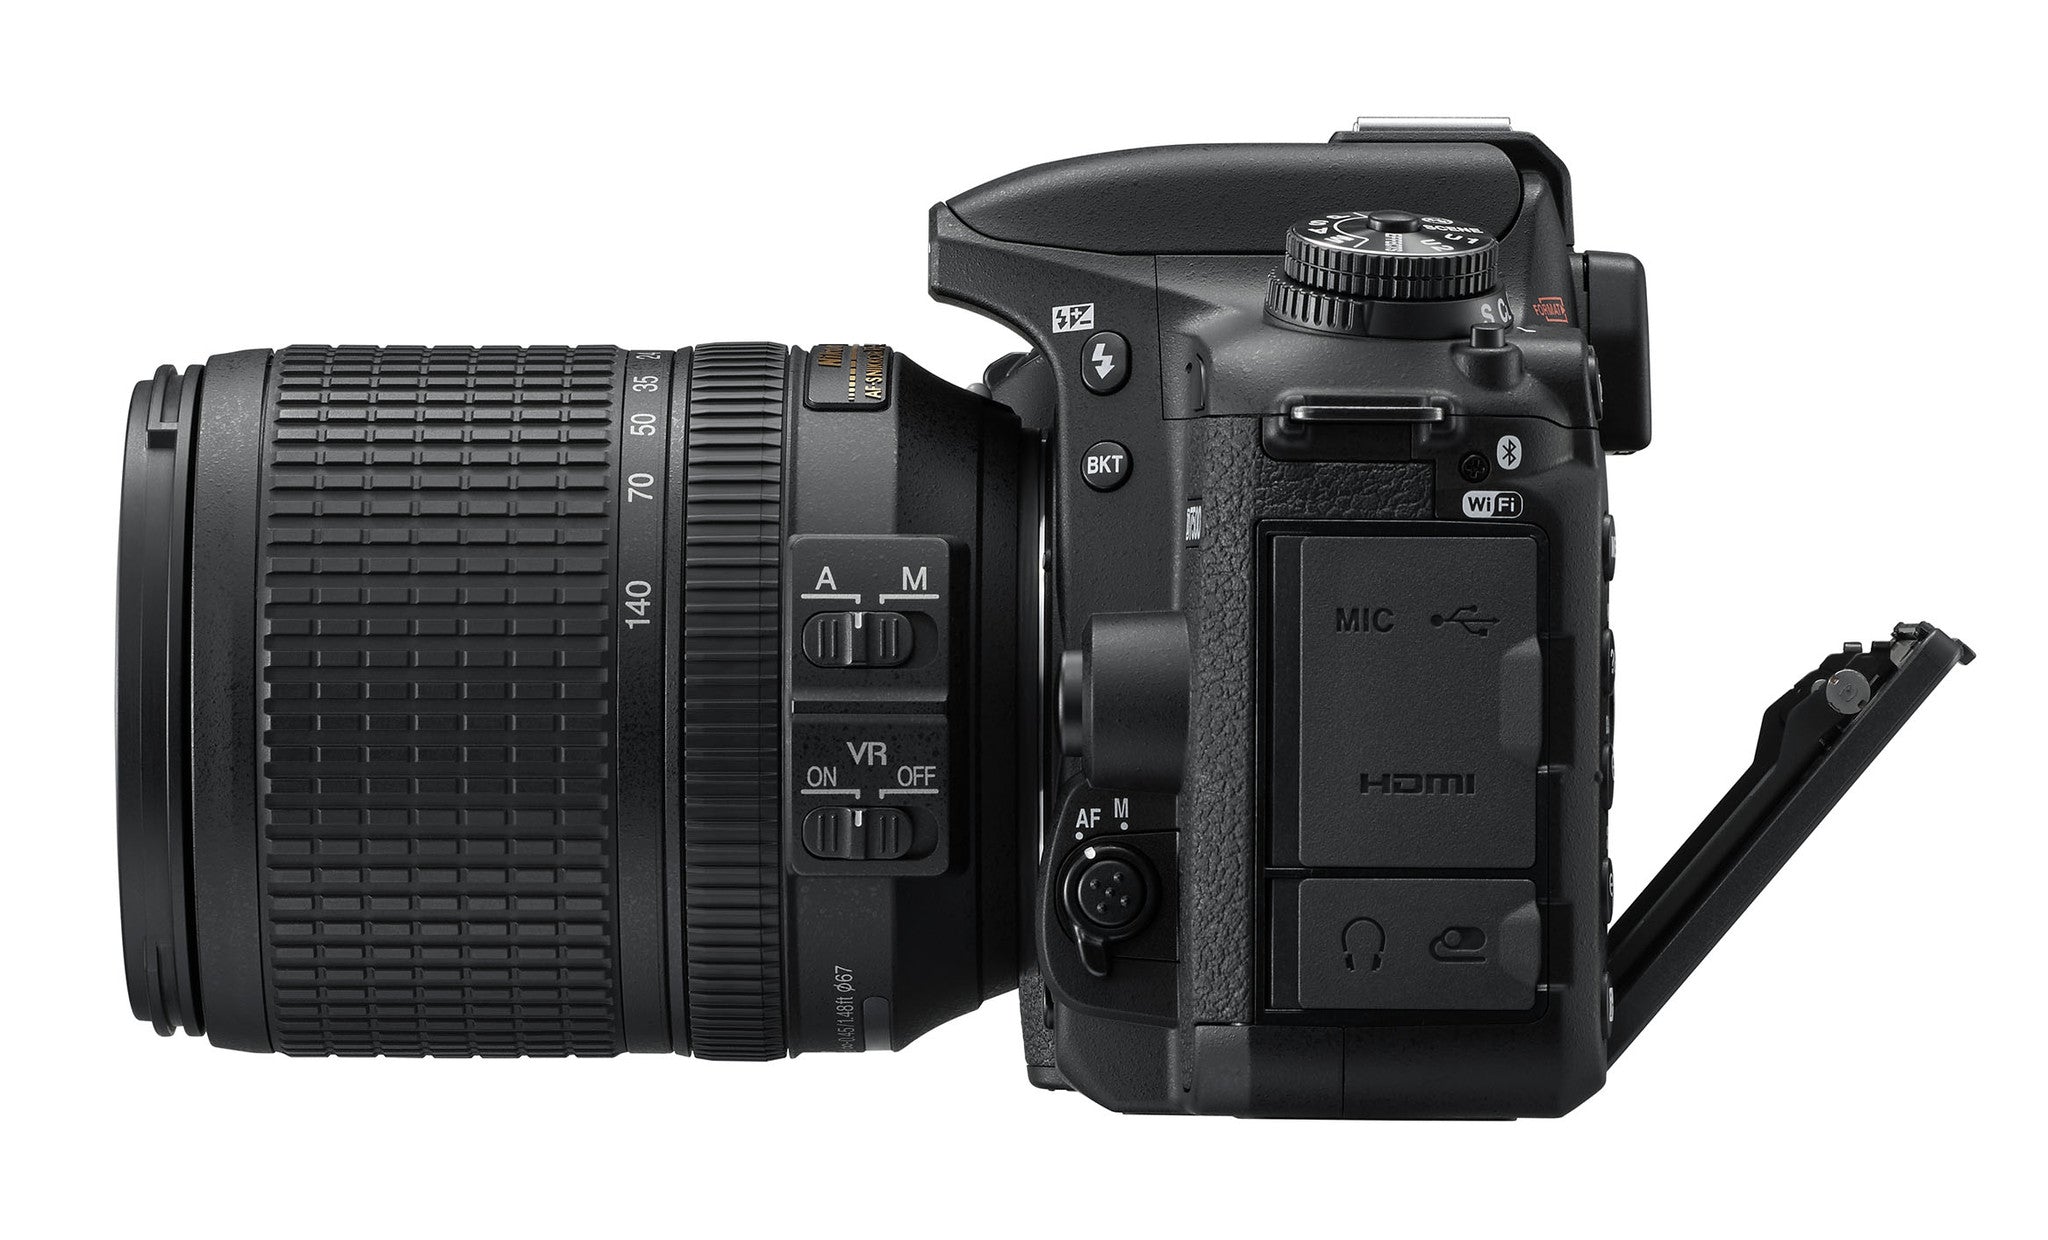 Nikon D7500 DSLR Camera with 18-140mm VR DX Lens